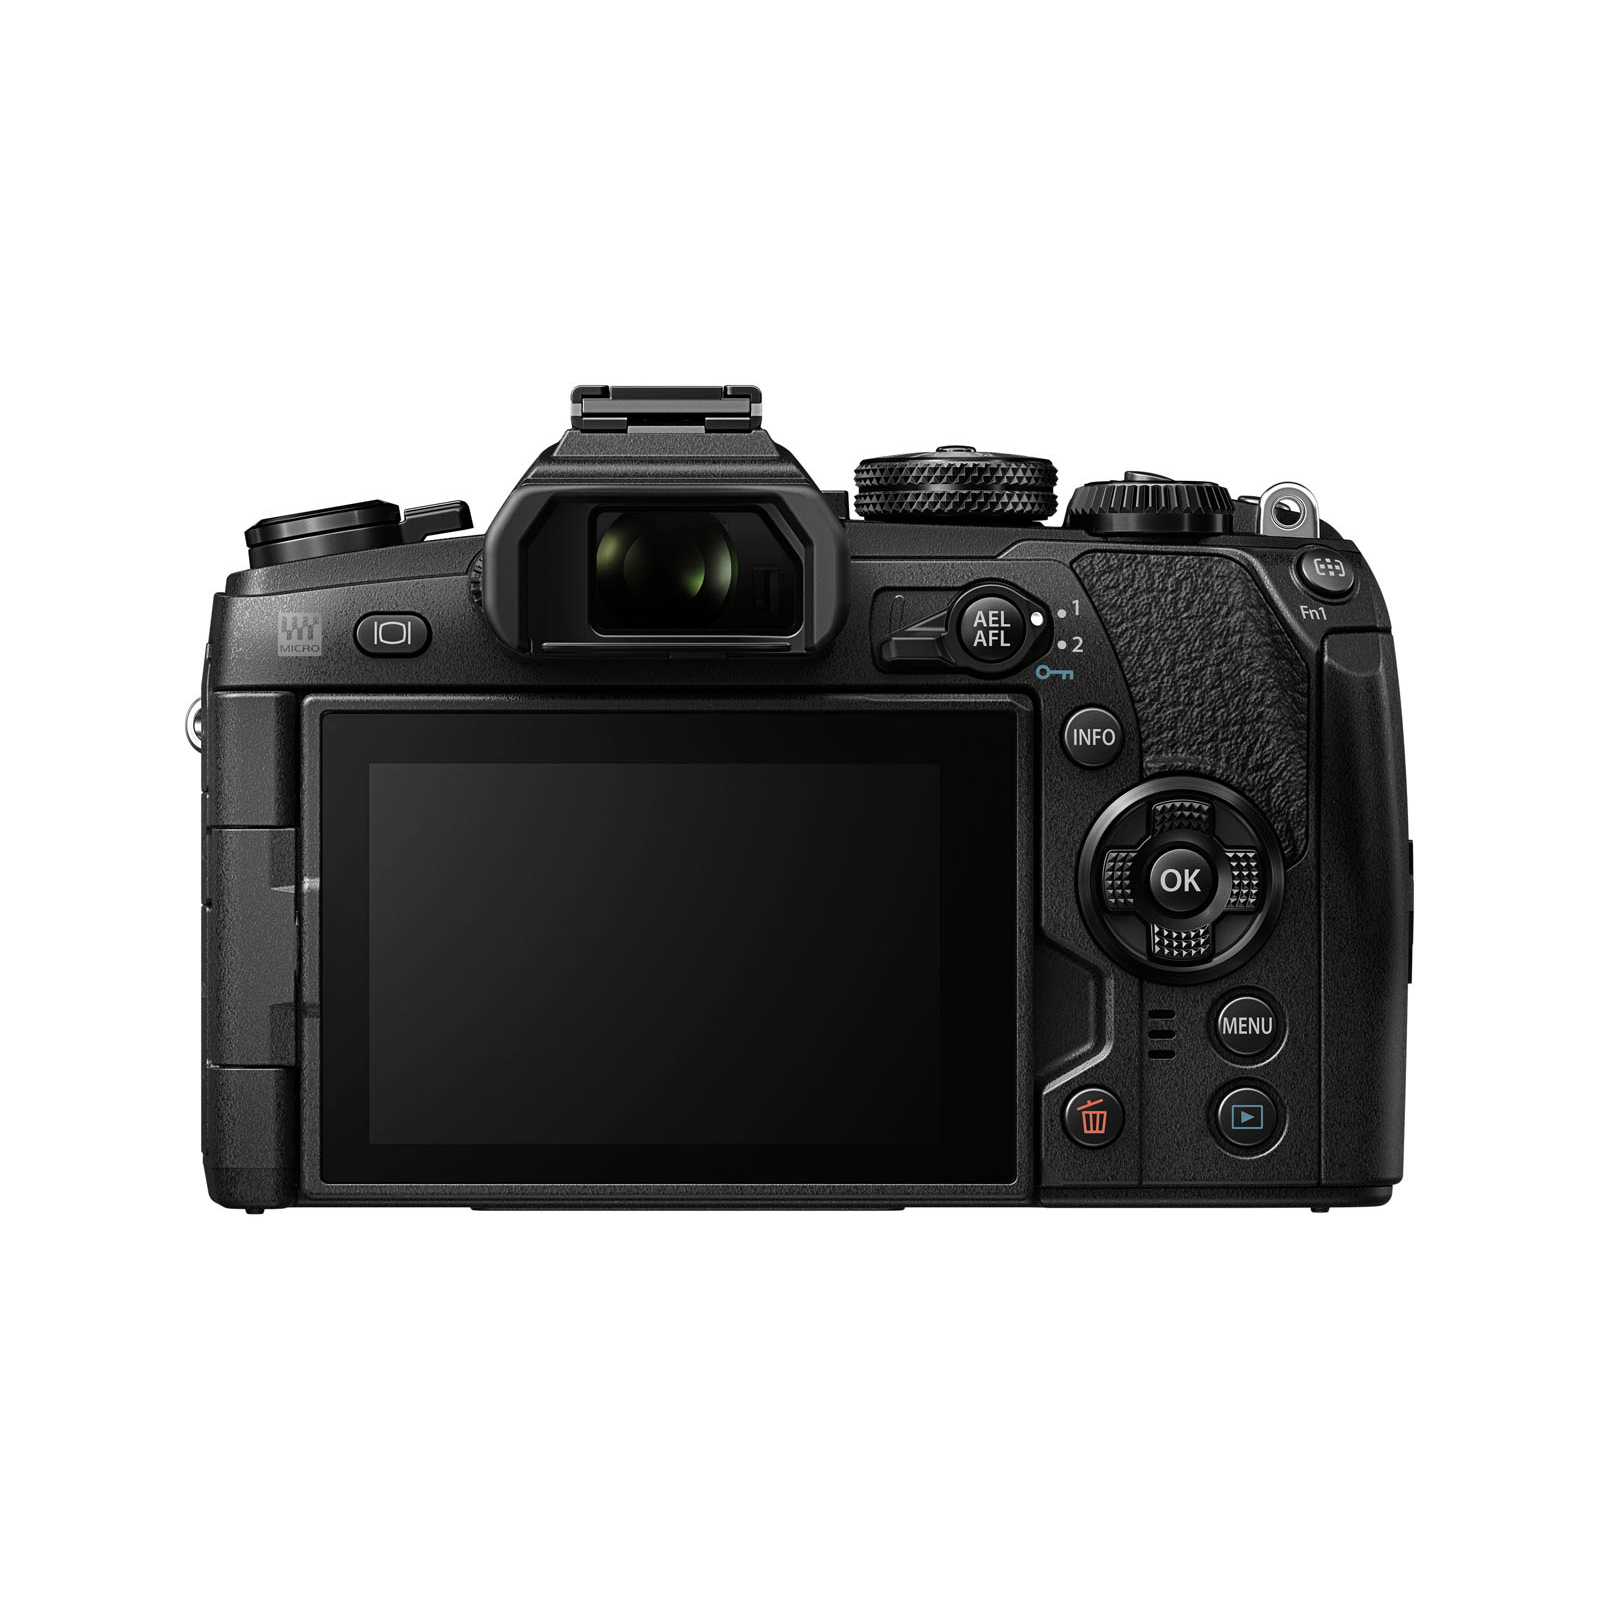 Цифровой фотоаппарат Olympus E-M1 mark II 12-40 Kit black/black (V207061BE000) изображение 5